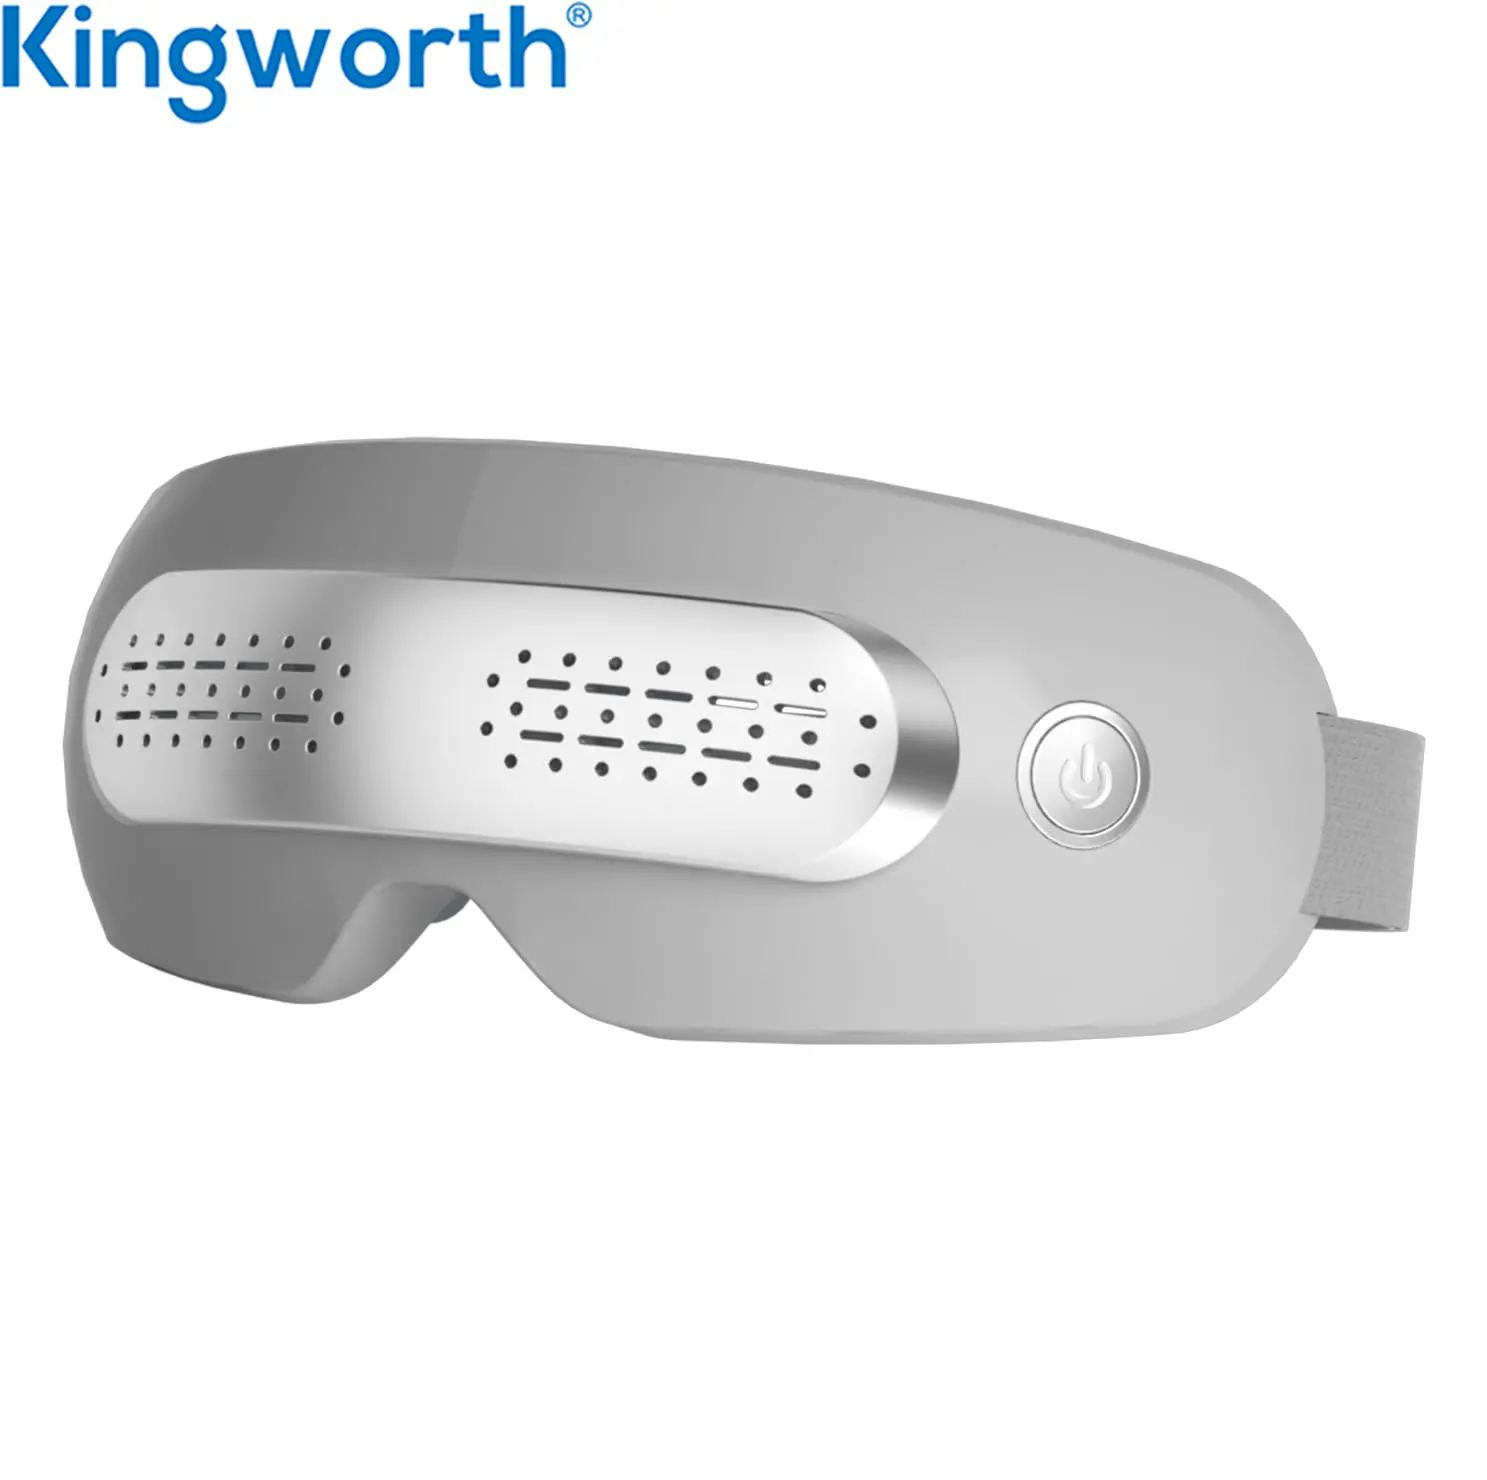 Kingworth 16 جهاز تدليك لتجفيف وشد العين من الرؤوس الهزازة ودورات العين الداكنة مع نافذة رؤية